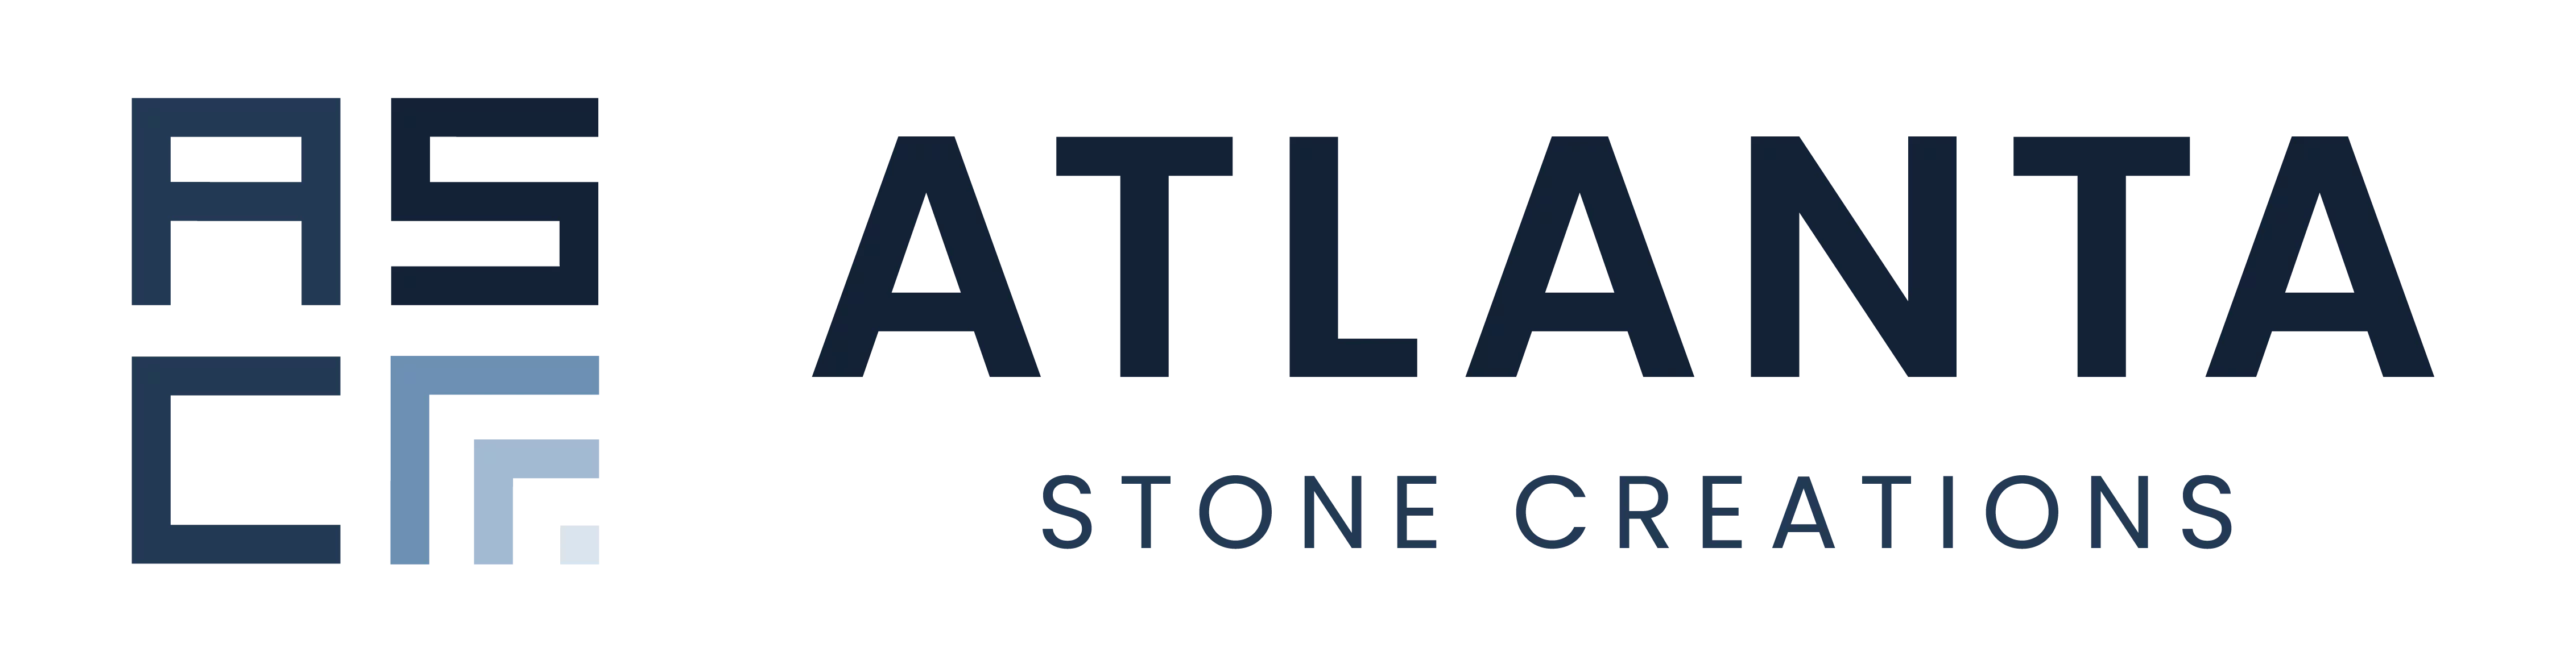 Atlanta Stone Creations